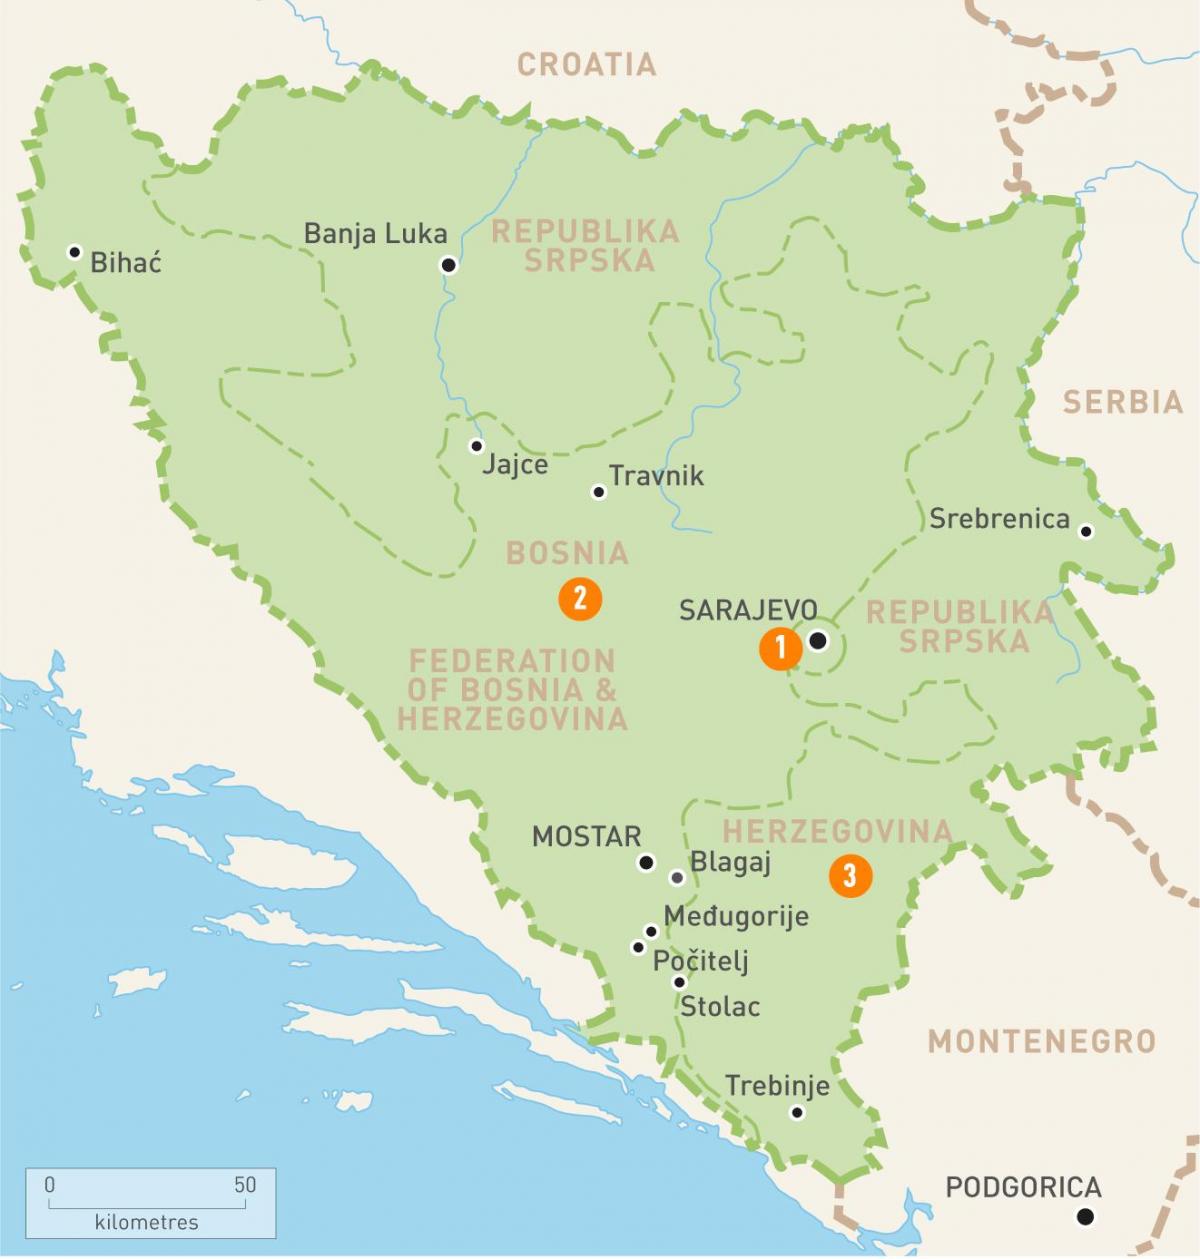 Kort af cronkite Bosníu